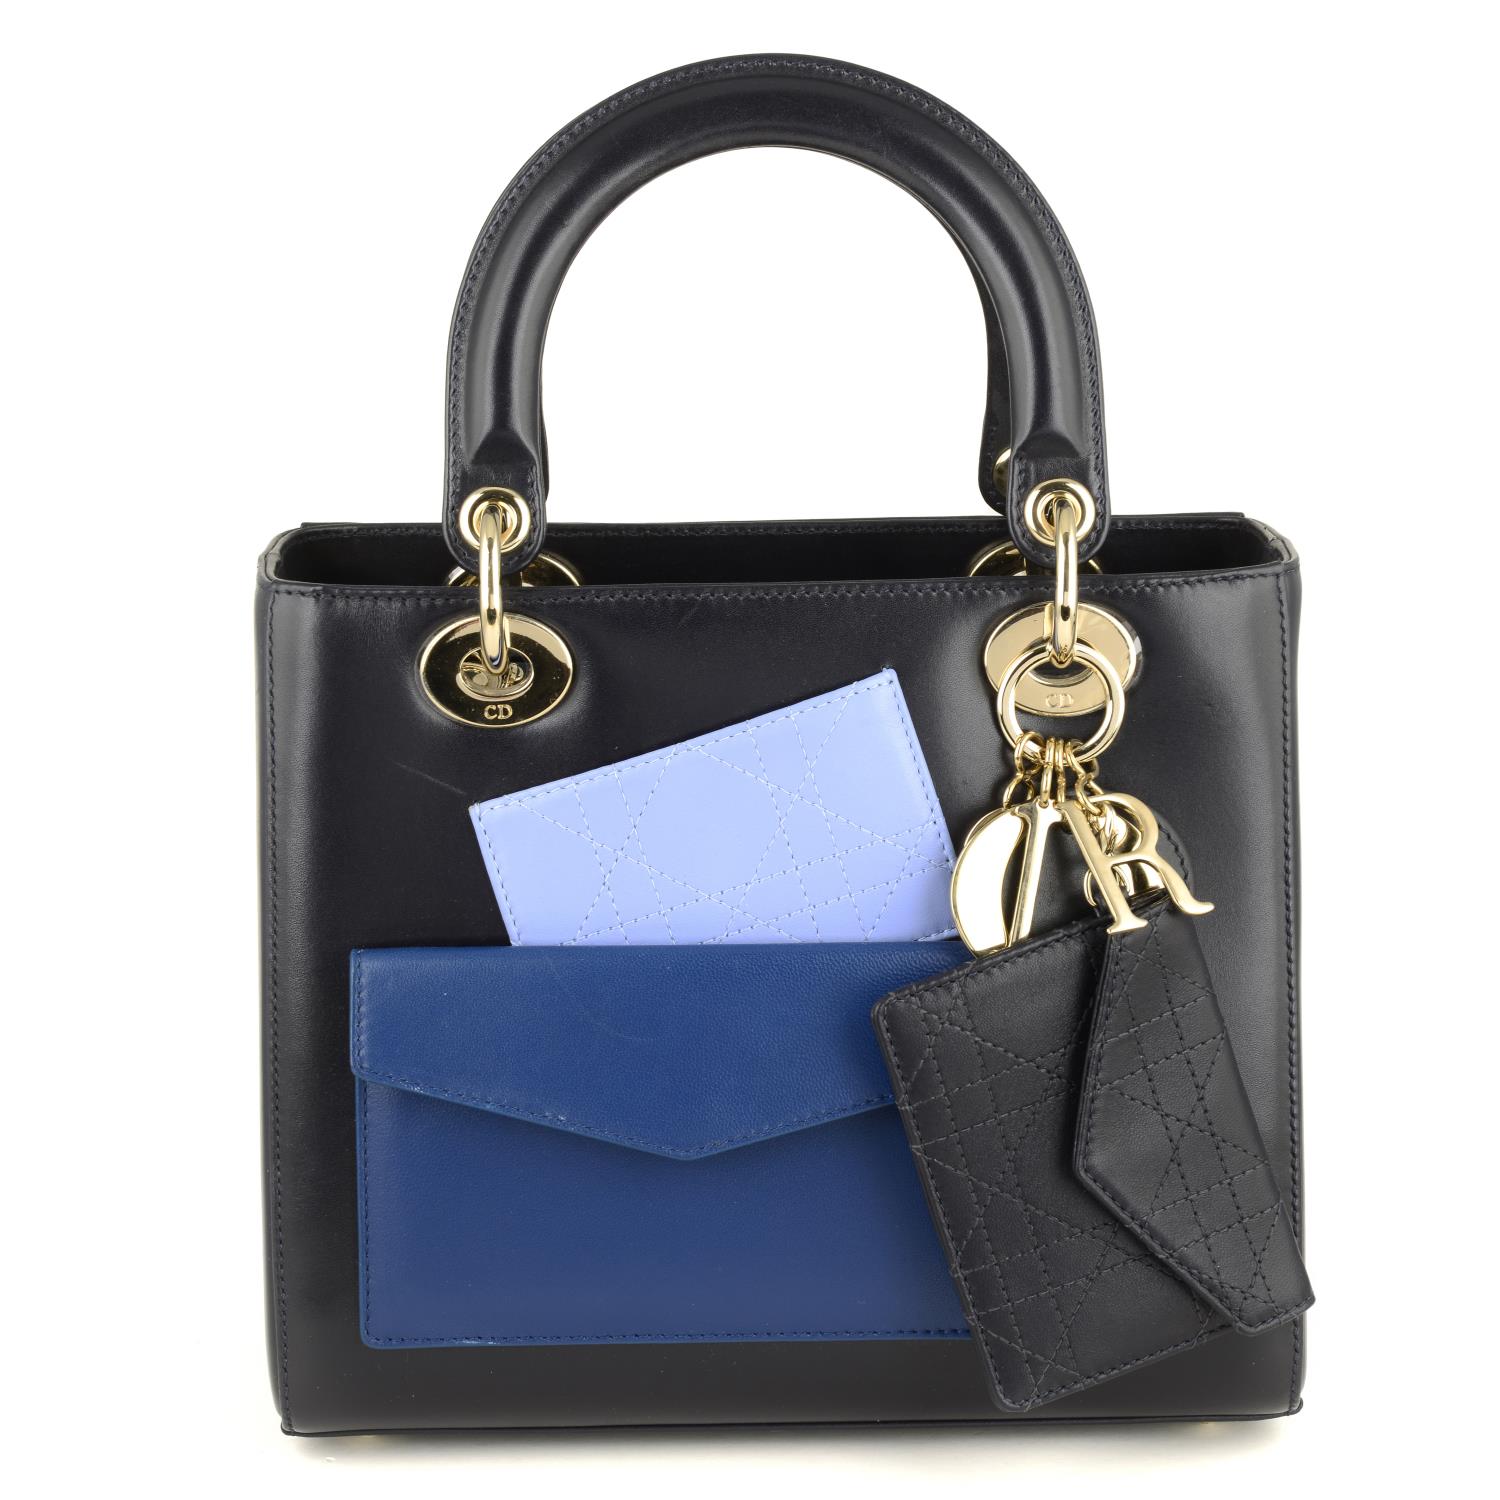 CHRISTIAN DIOR - a limited edition Lady Dior Pockets MM handbag.